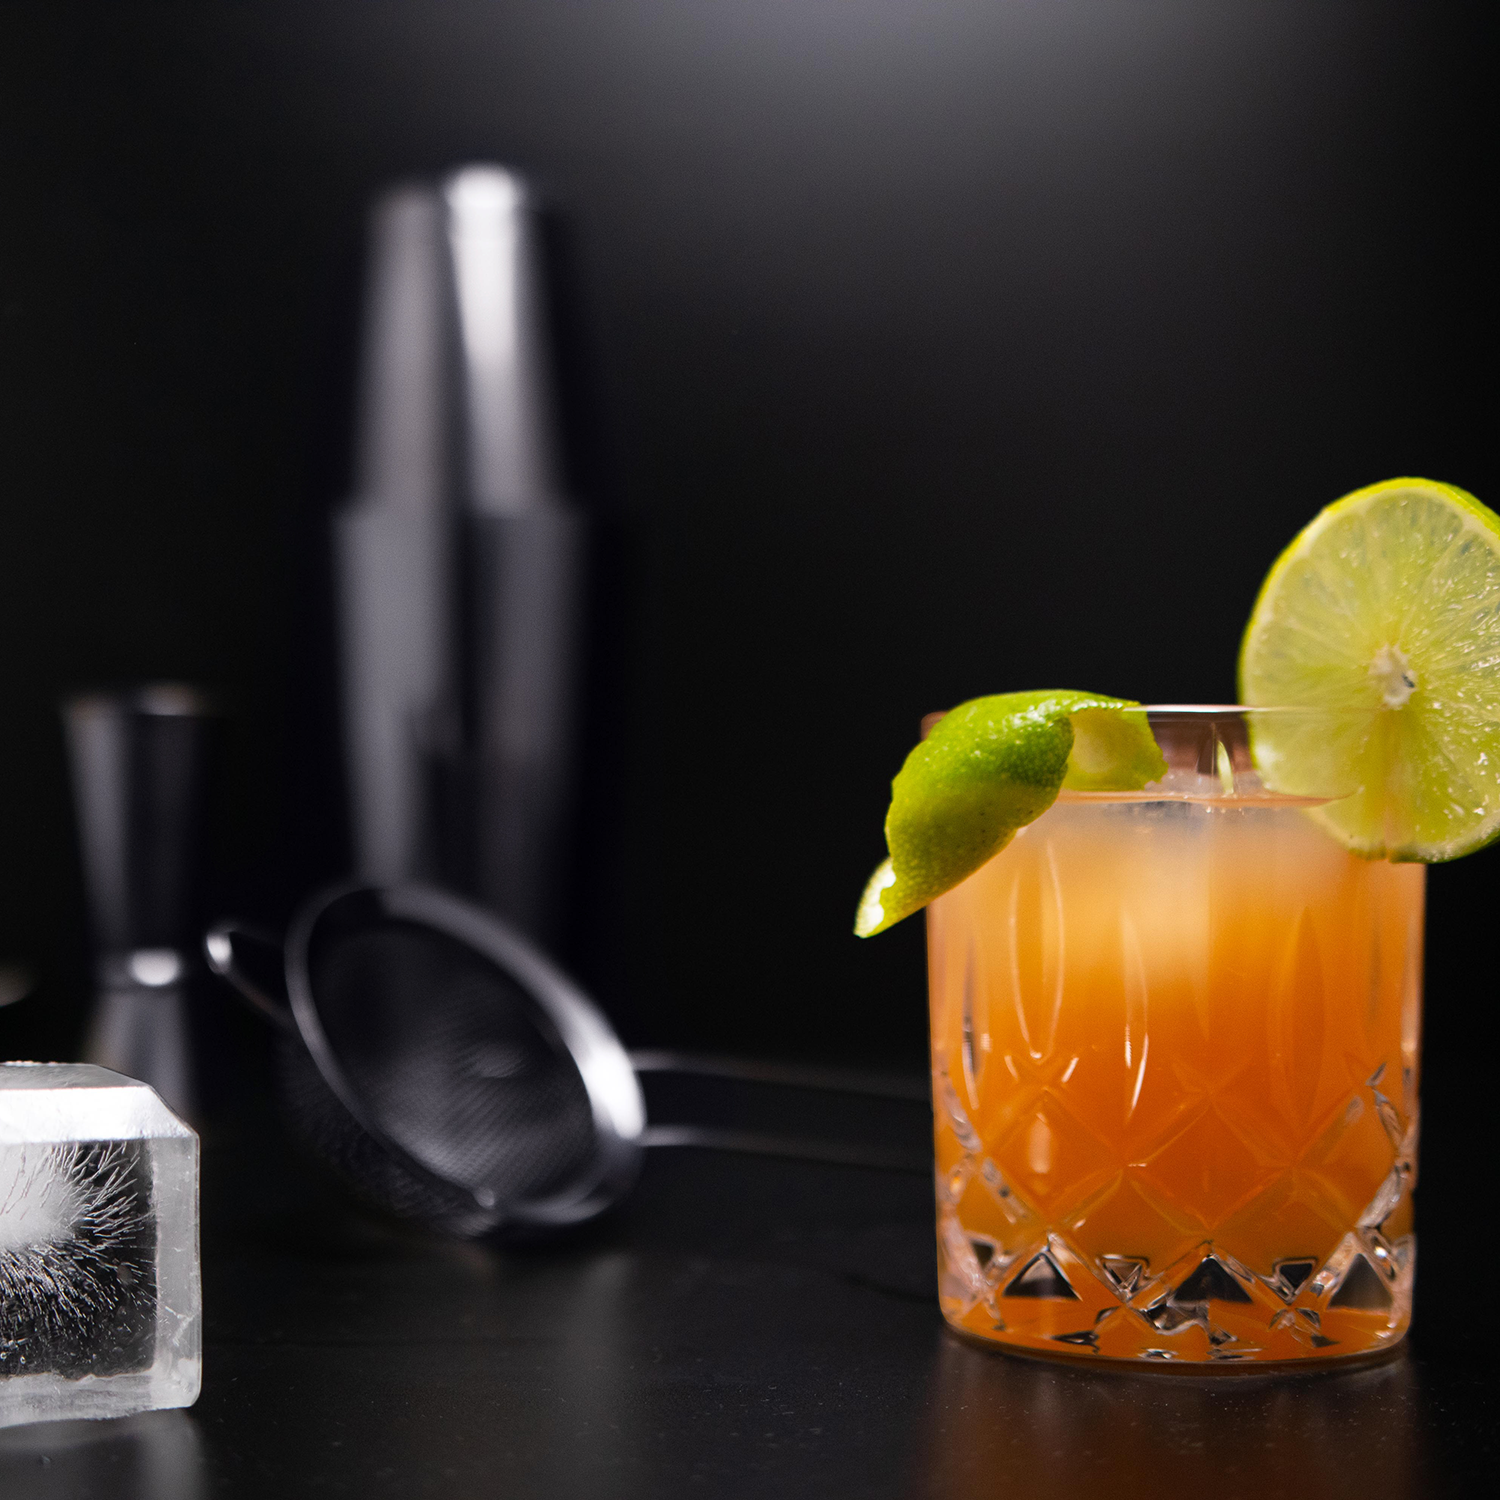 Volt) Grey SHAKEIN Set | Edles Space 12-teilig Cocktail Set (1 Cocktail Shaker